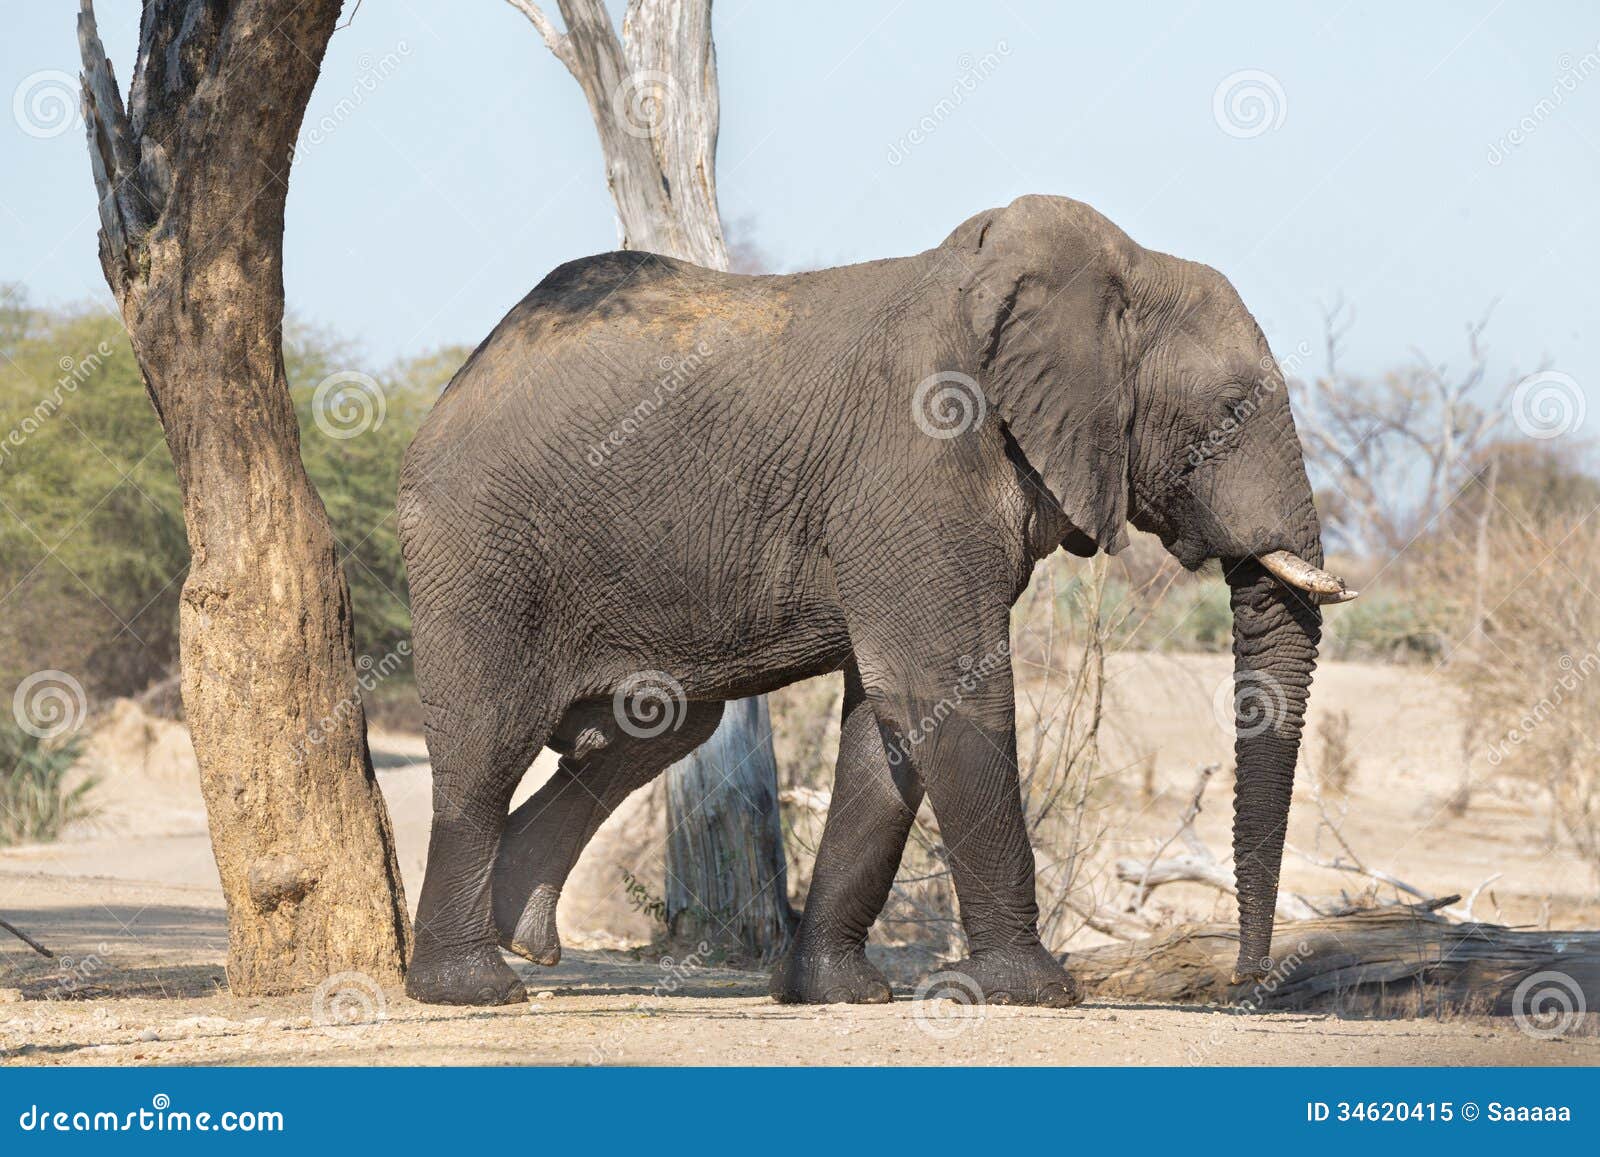 Walking Elephant Royalty Free Stock Photo - Image: 34620415